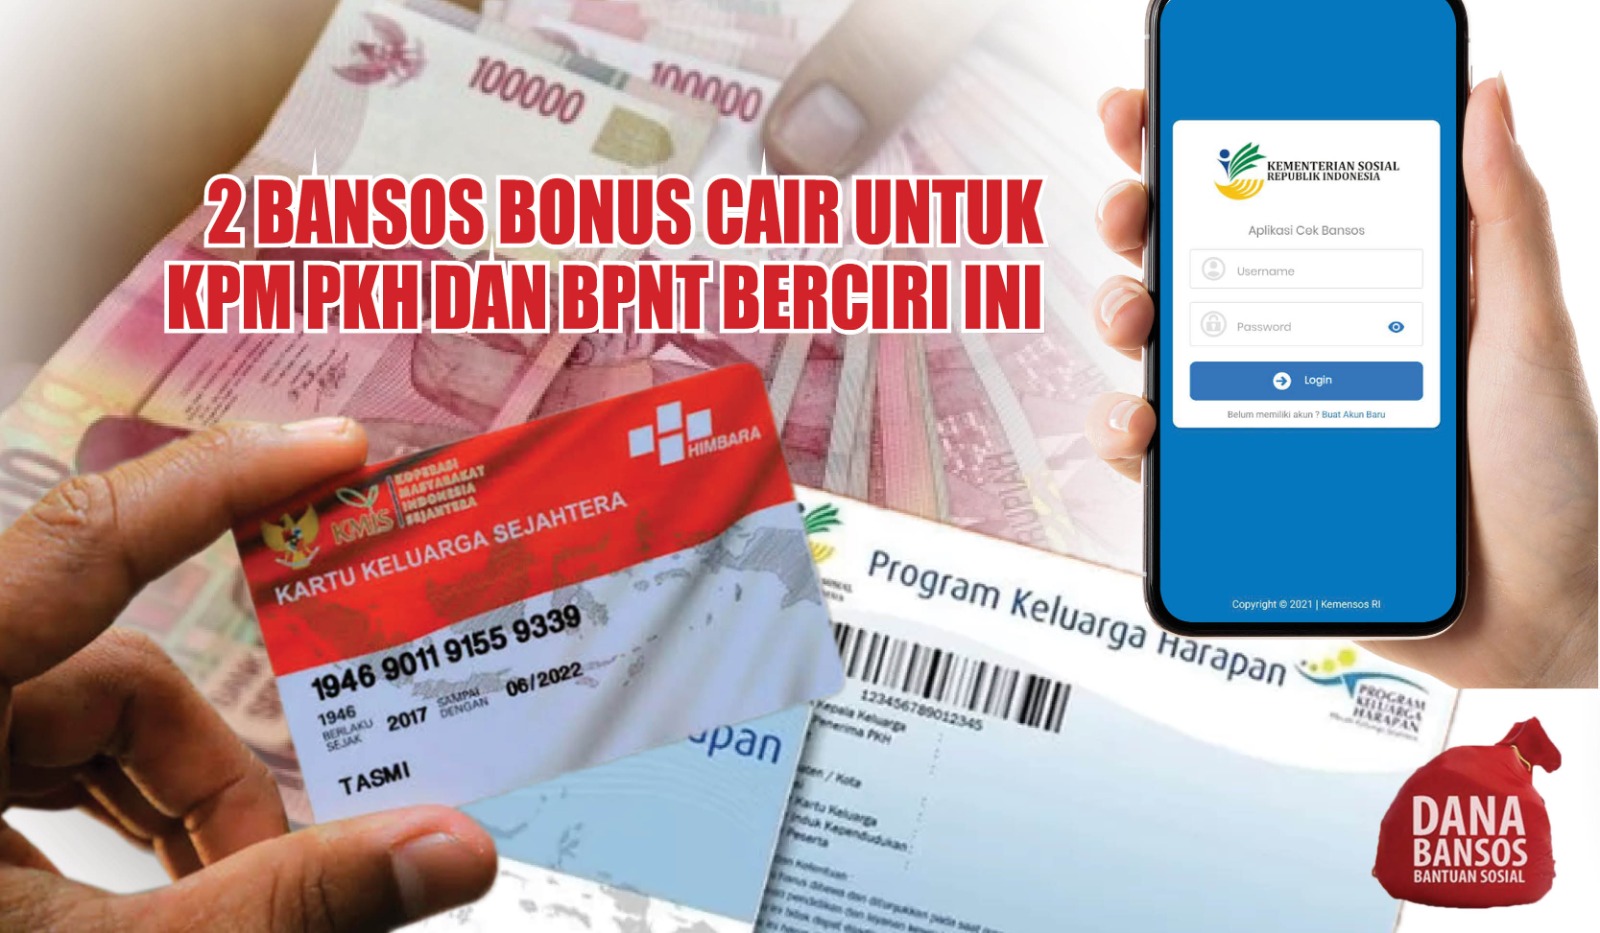 Berkah Akhir Bulan, 2 Bansos Bonus Cair untuk KPM PKH dan BPNT Berciri Ini